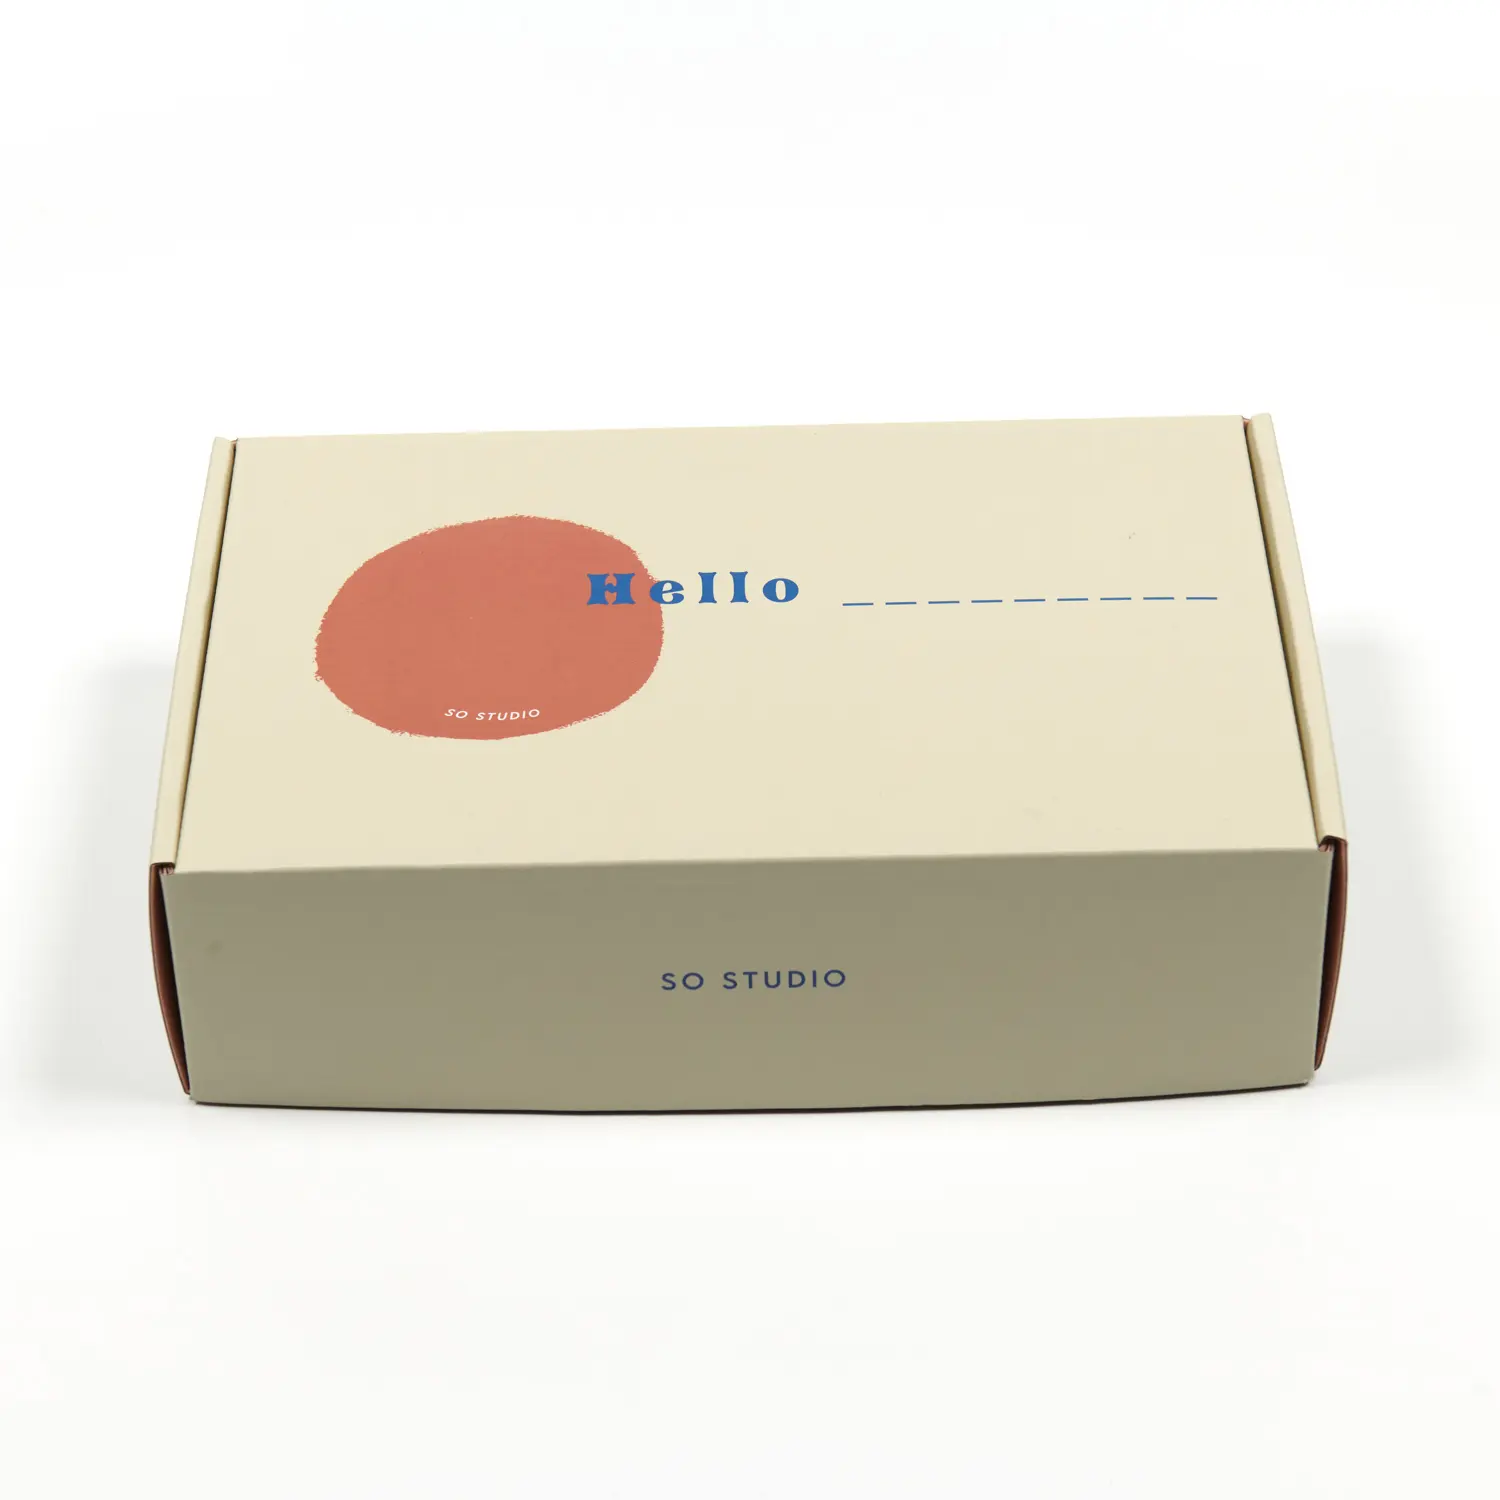 リサイクル可能なボックス紙段ボール箱ボックスクラフト用カスタム紙